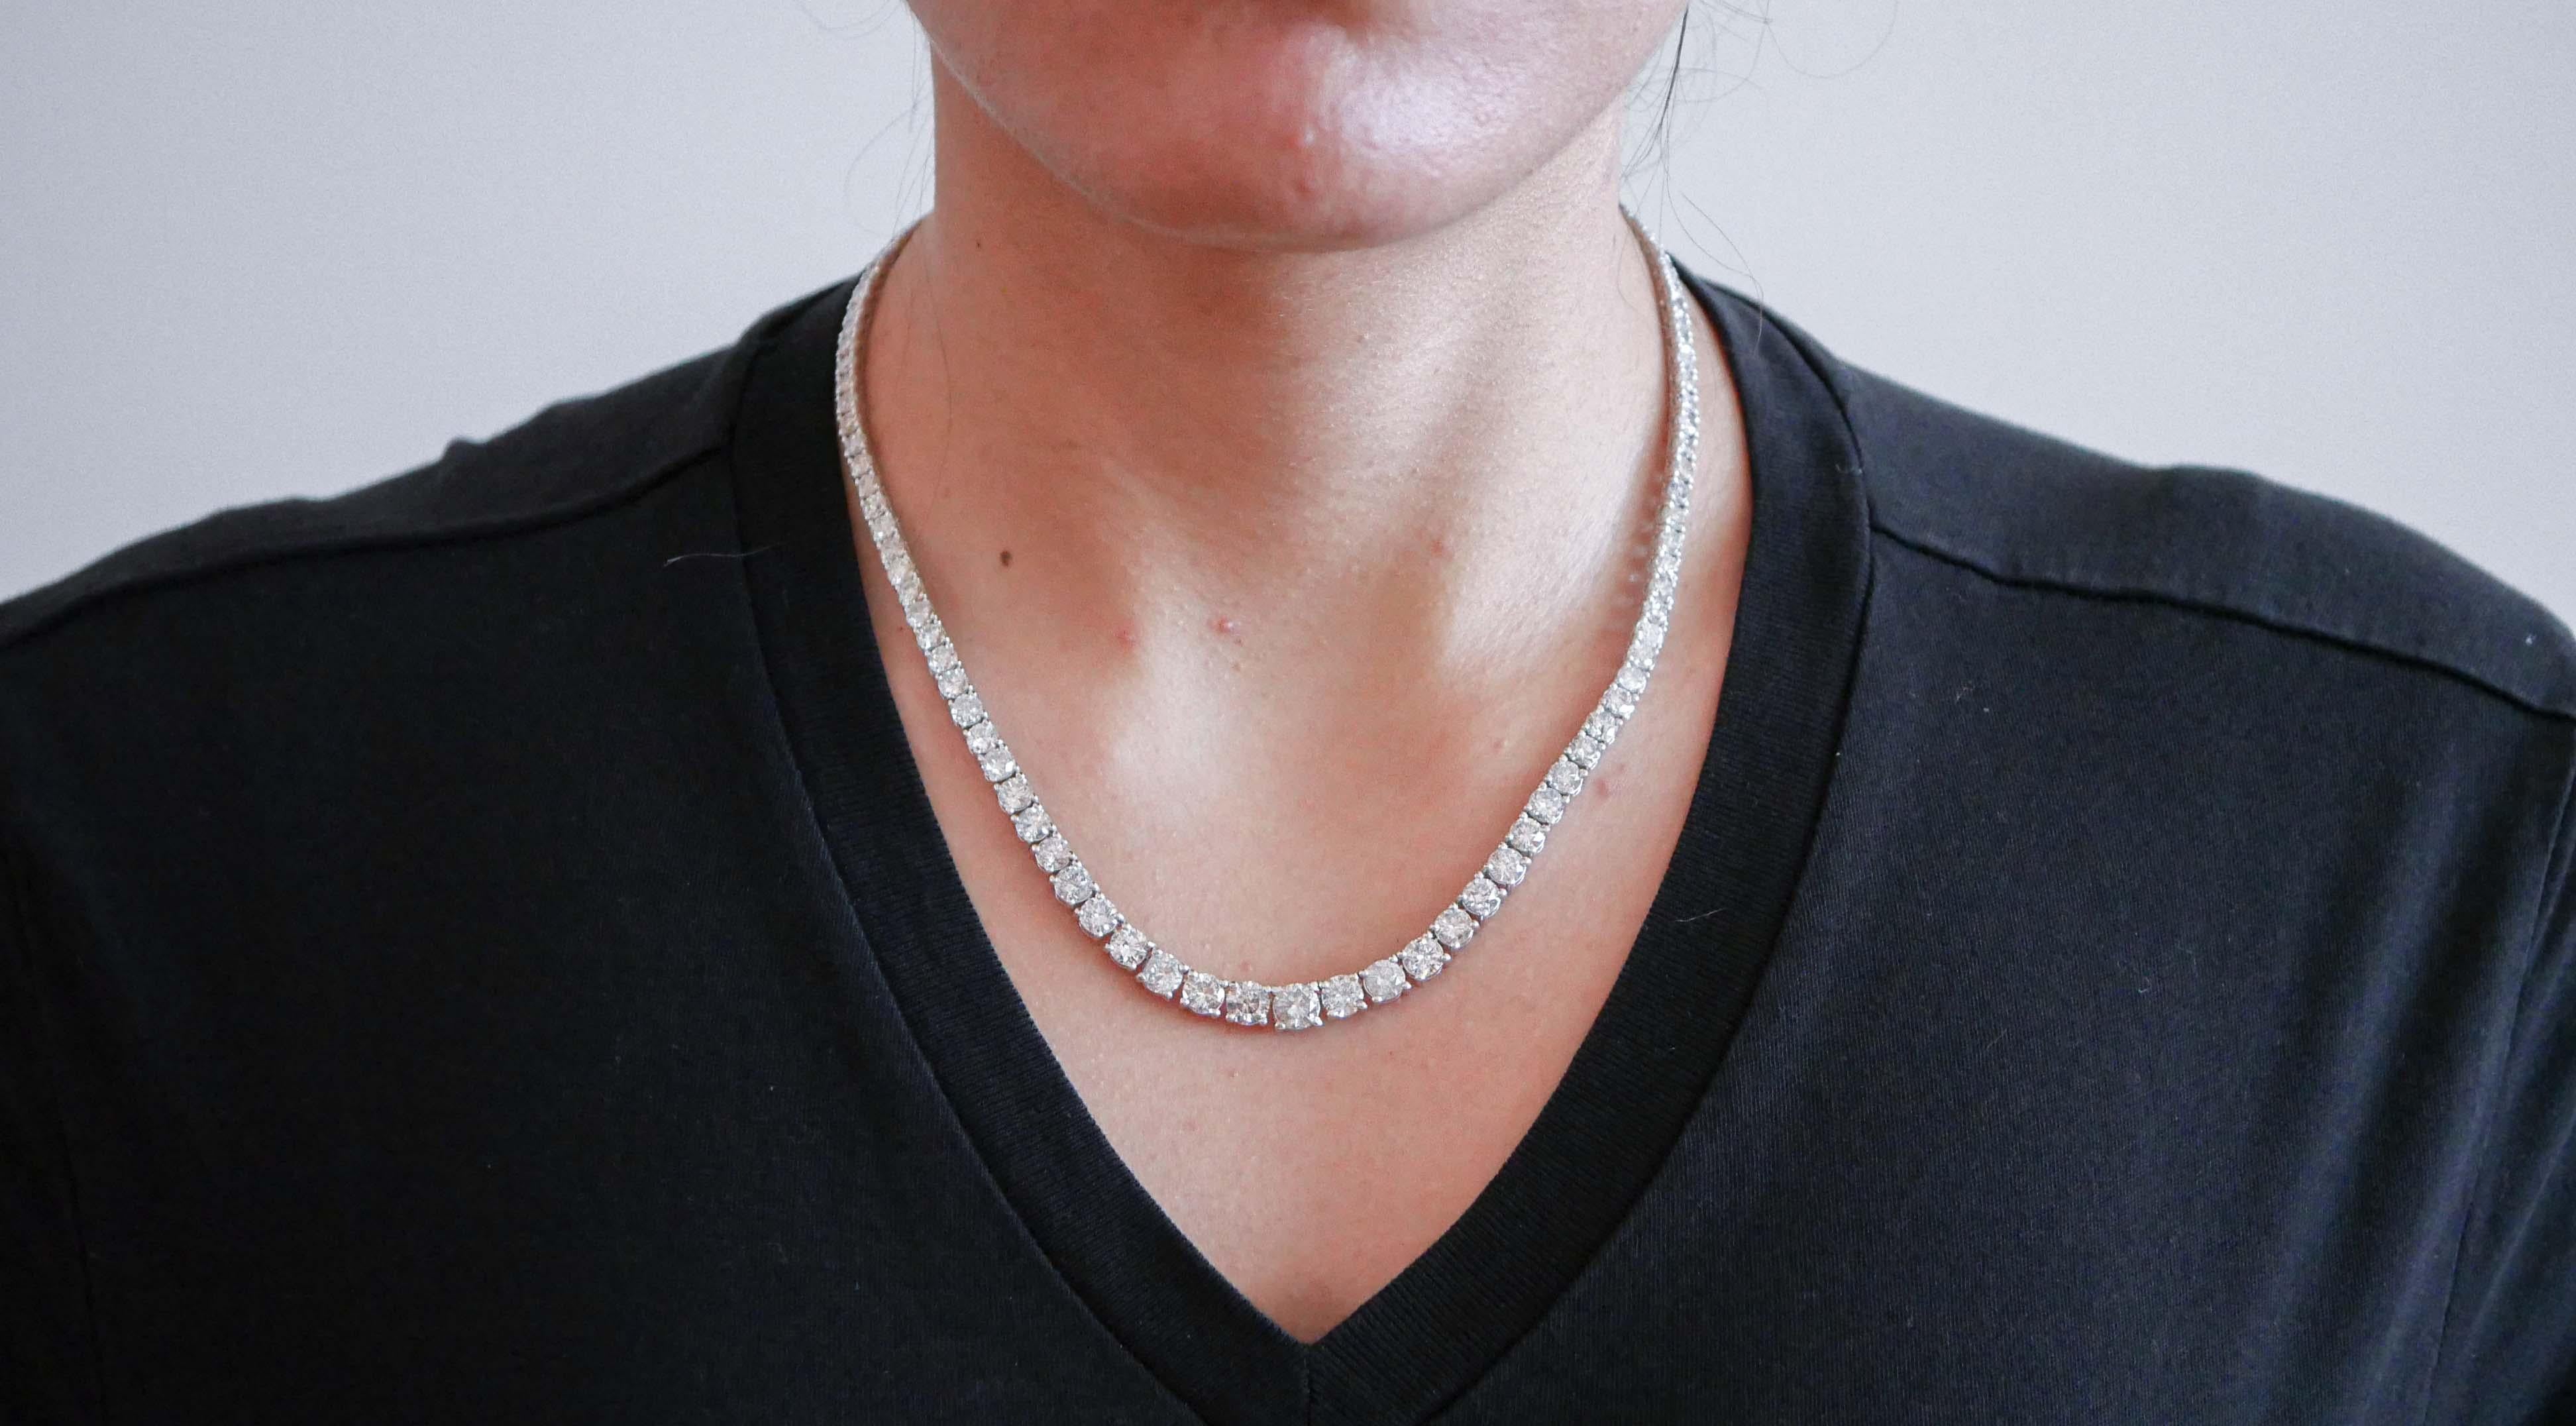 Brilliant Cut 26.46 Carats Diamonds, 18 Karat White Gold Tennis Necklace. For Sale